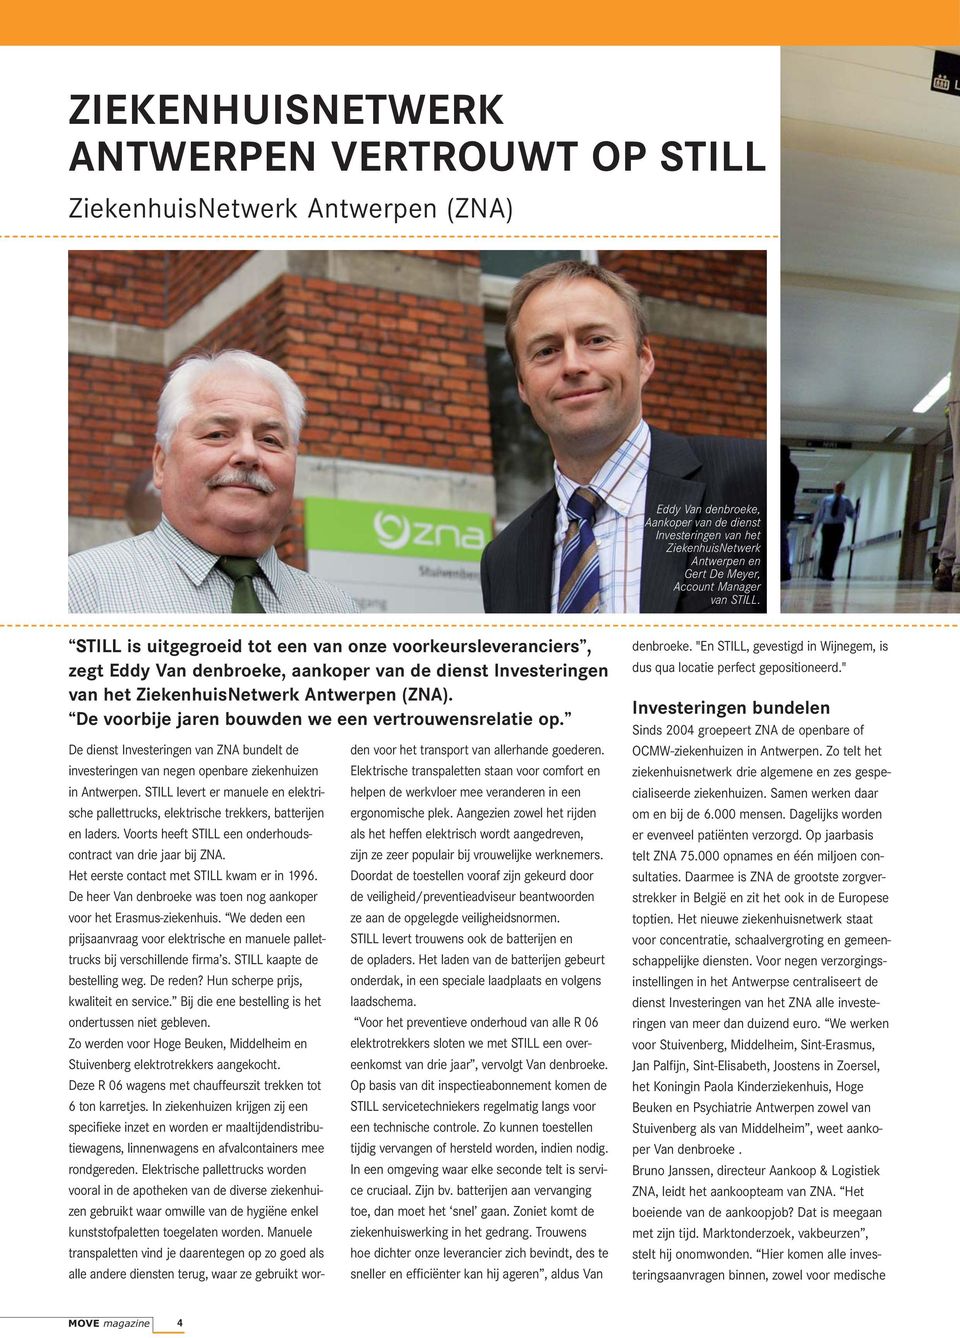 De voorbije jaren bouwden we een vertrouwensrelatie op. De dienst Investeringen van ZNA bundelt de investeringen van negen openbare ziekenhuizen in Antwerpen.